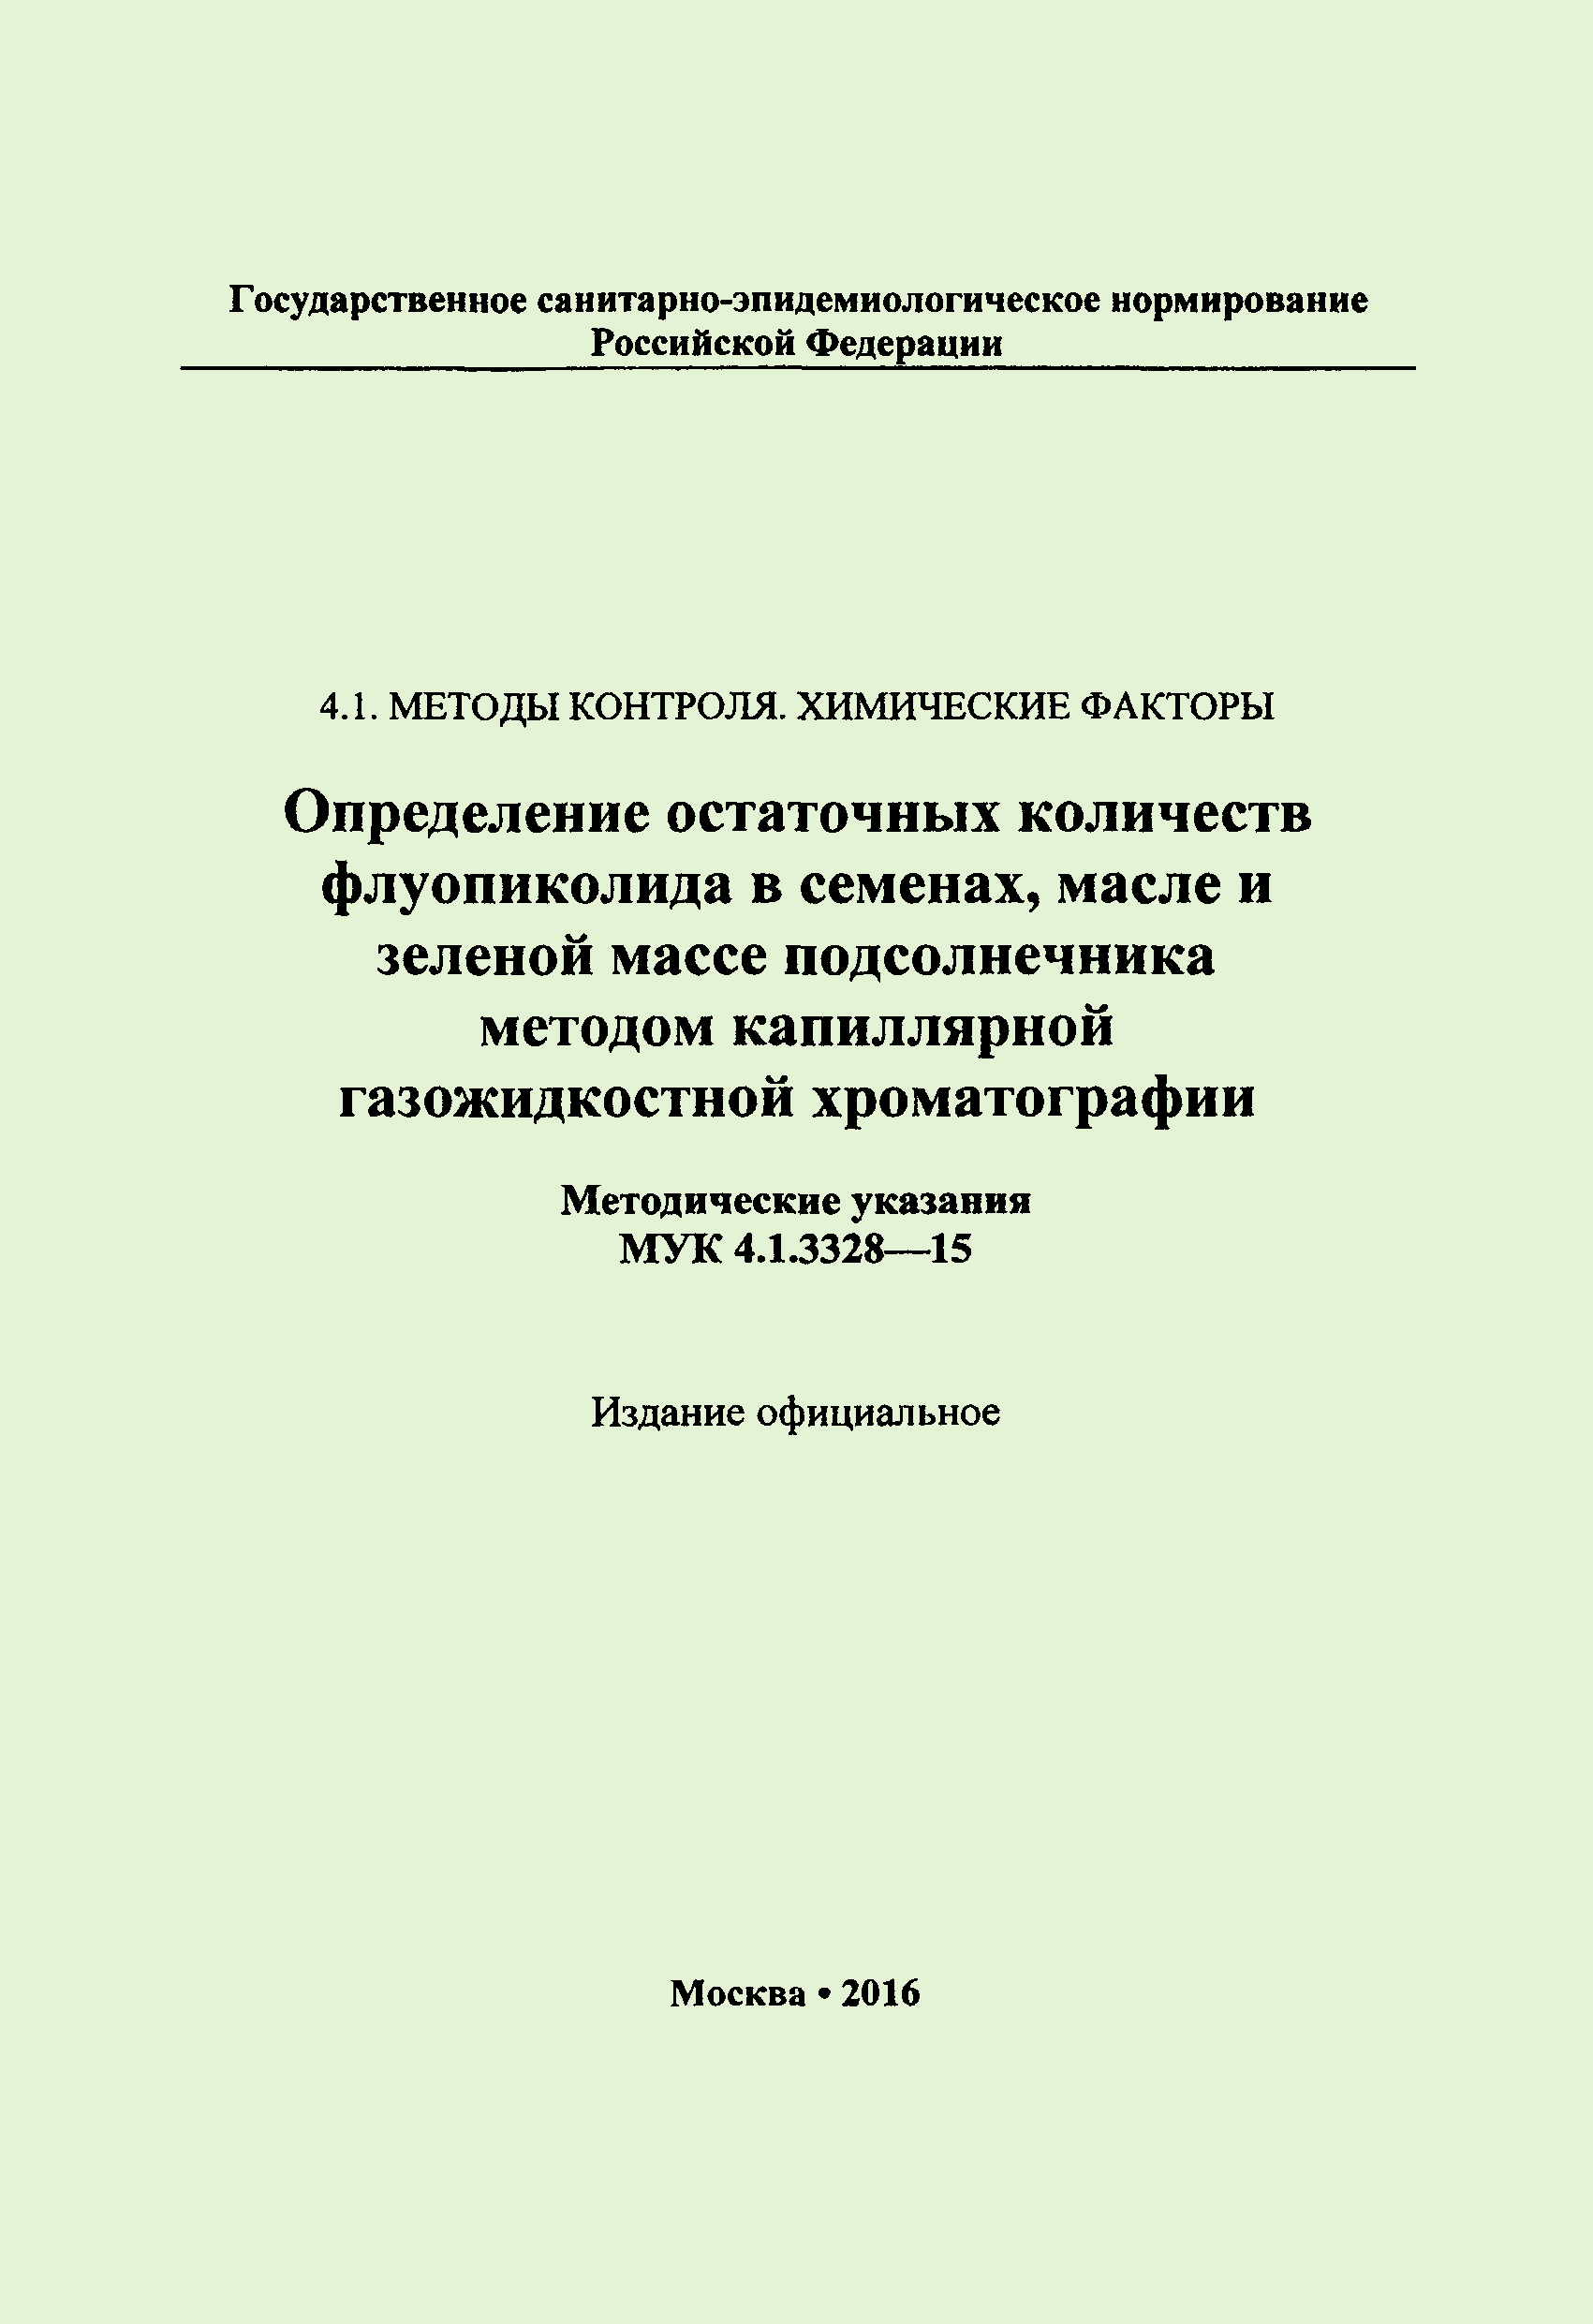 МУК 4.1.3328-15